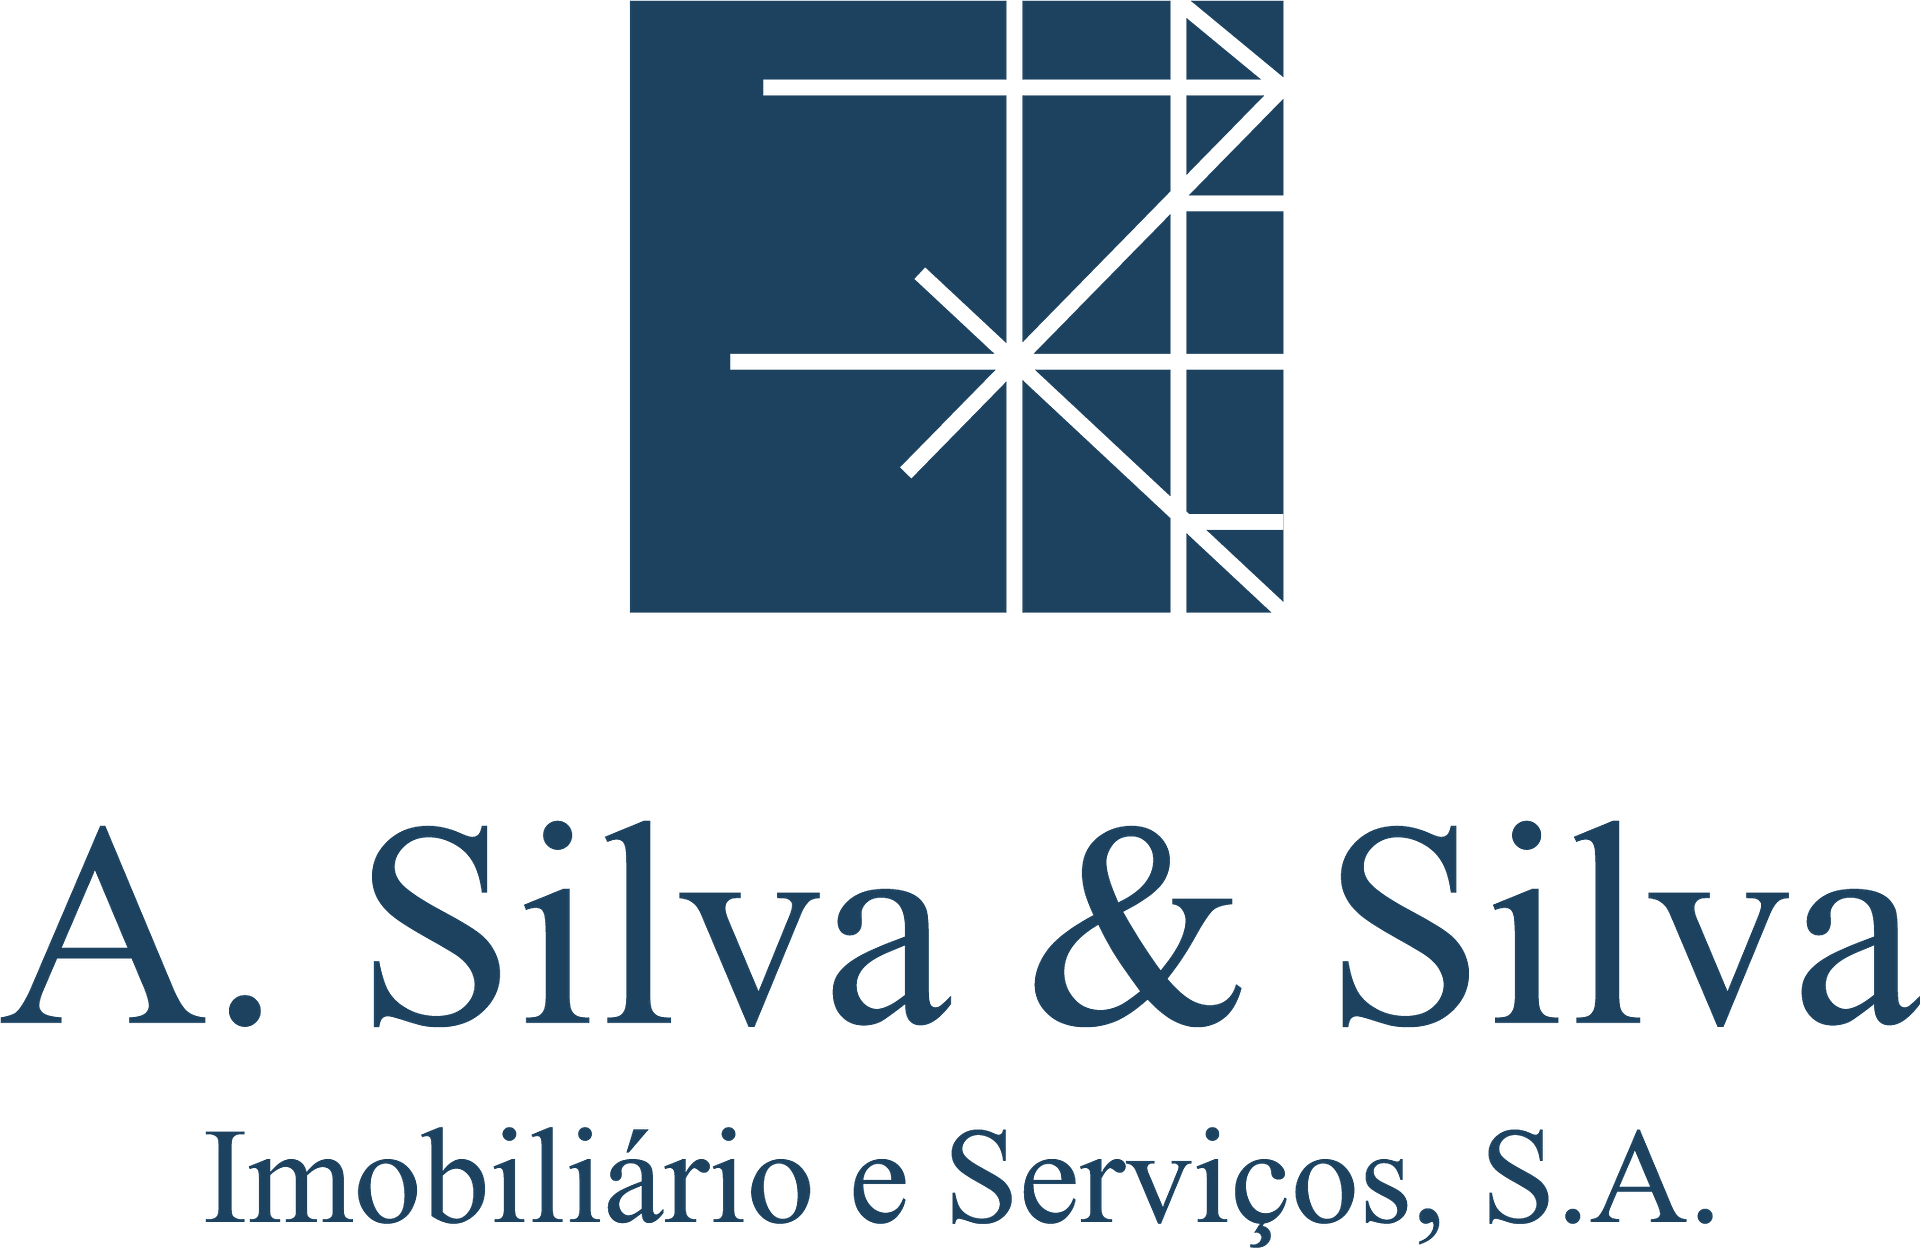 Logo institucional ASilvaSilva azul